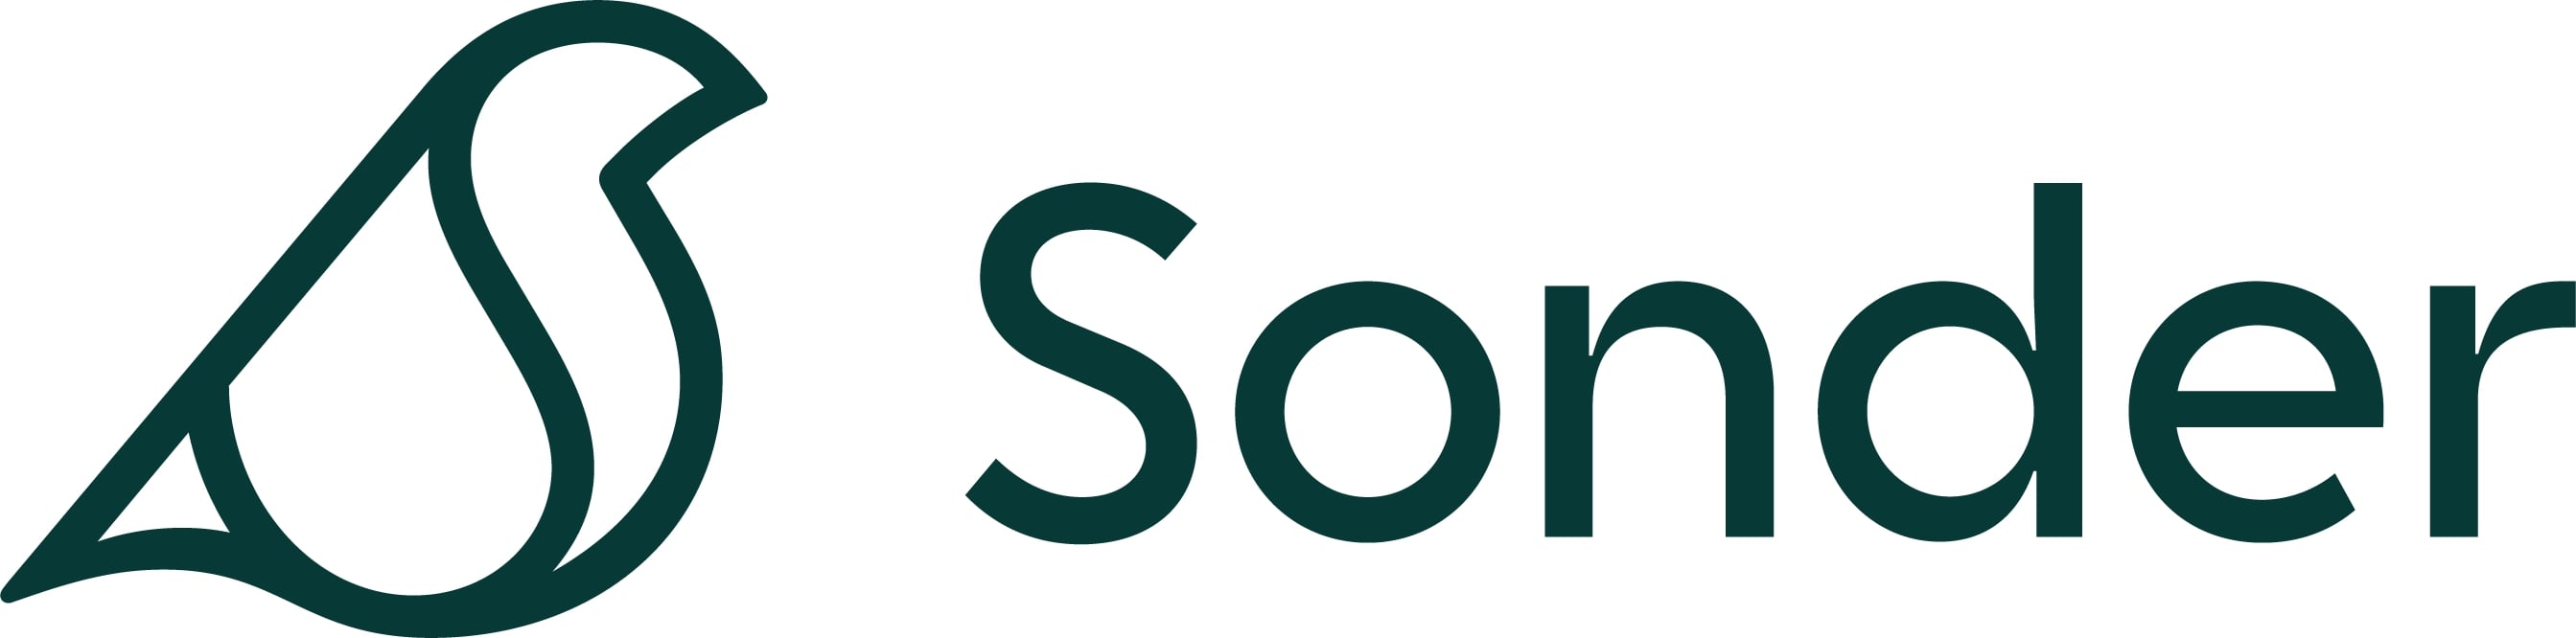 Sonder Inc.